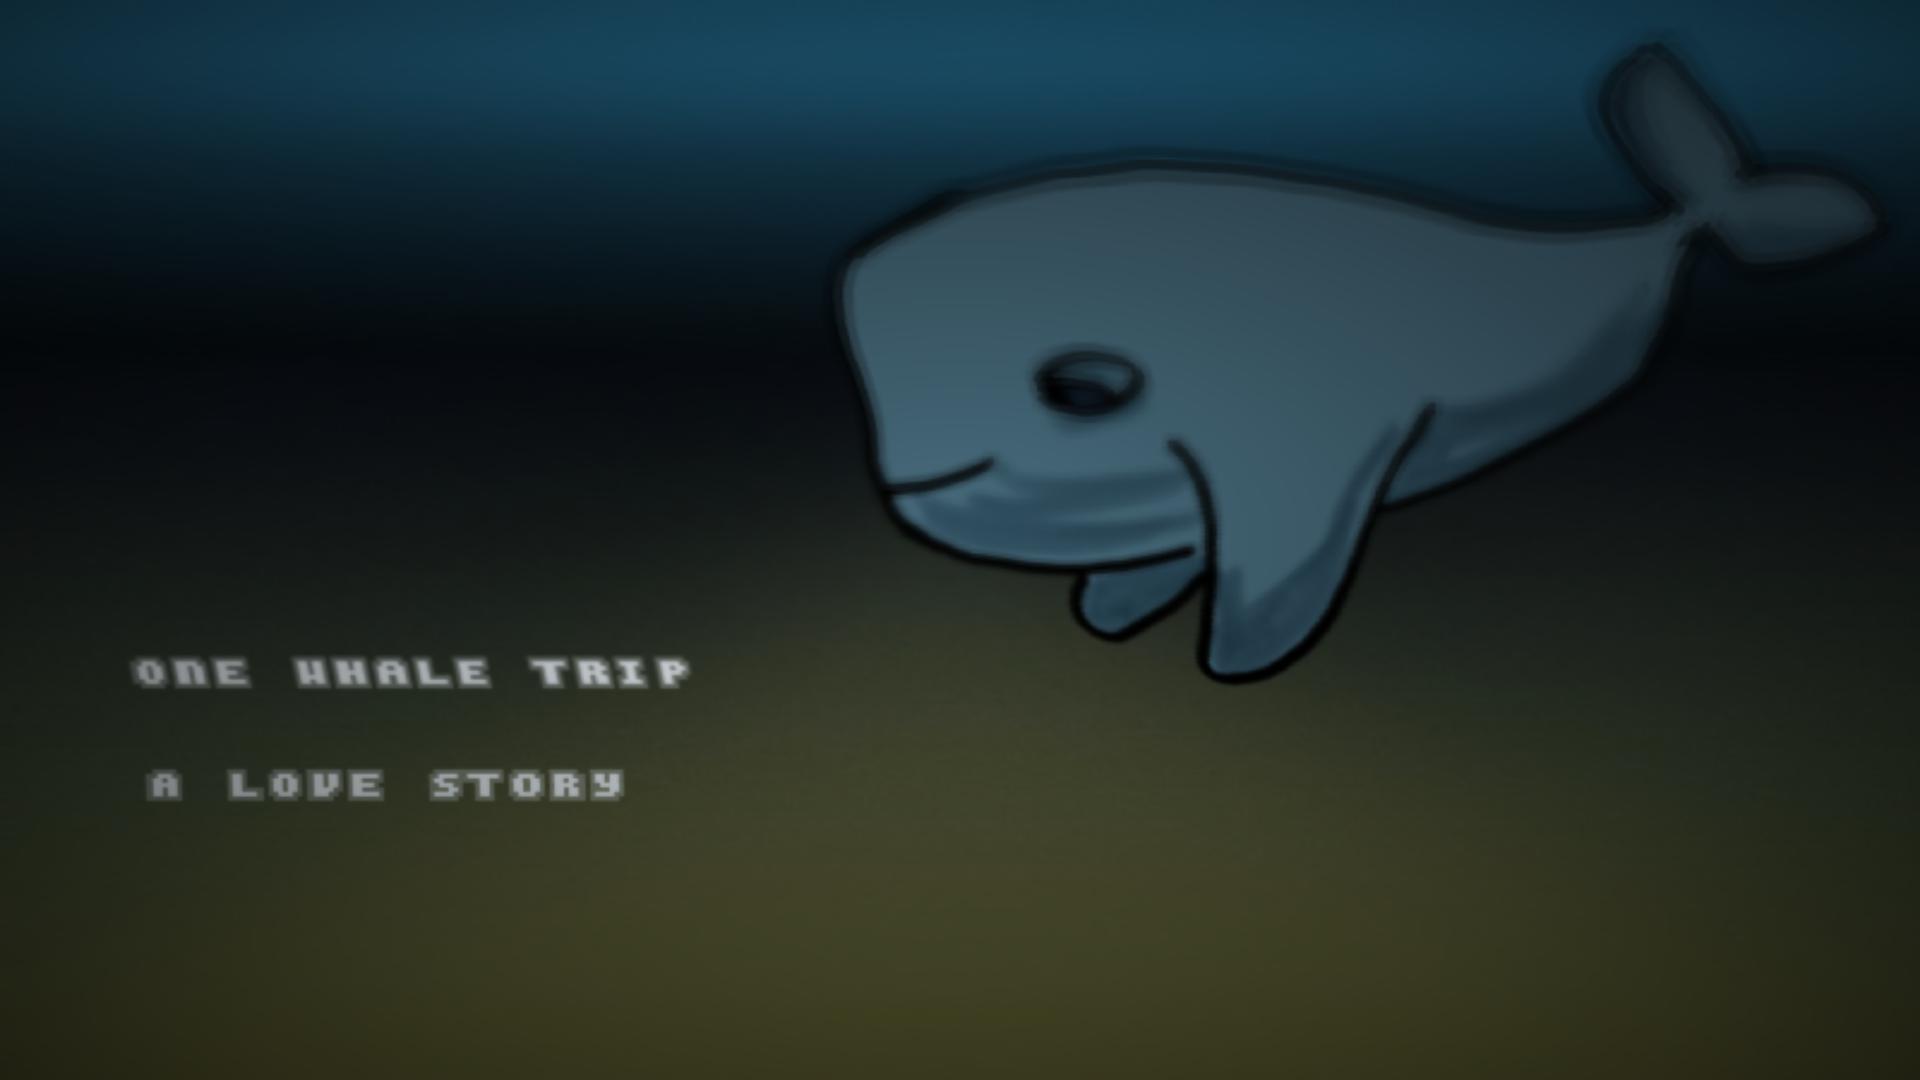 One Whale Trip